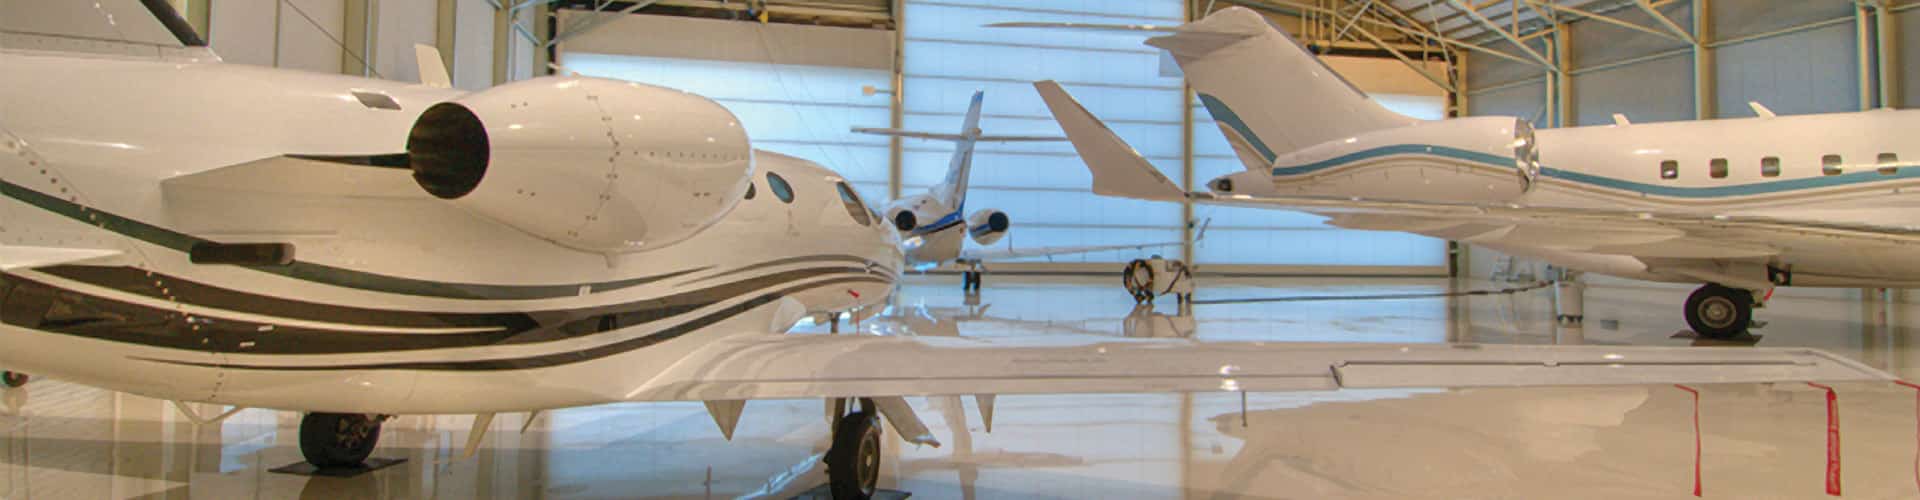 Aviation overview in hangar